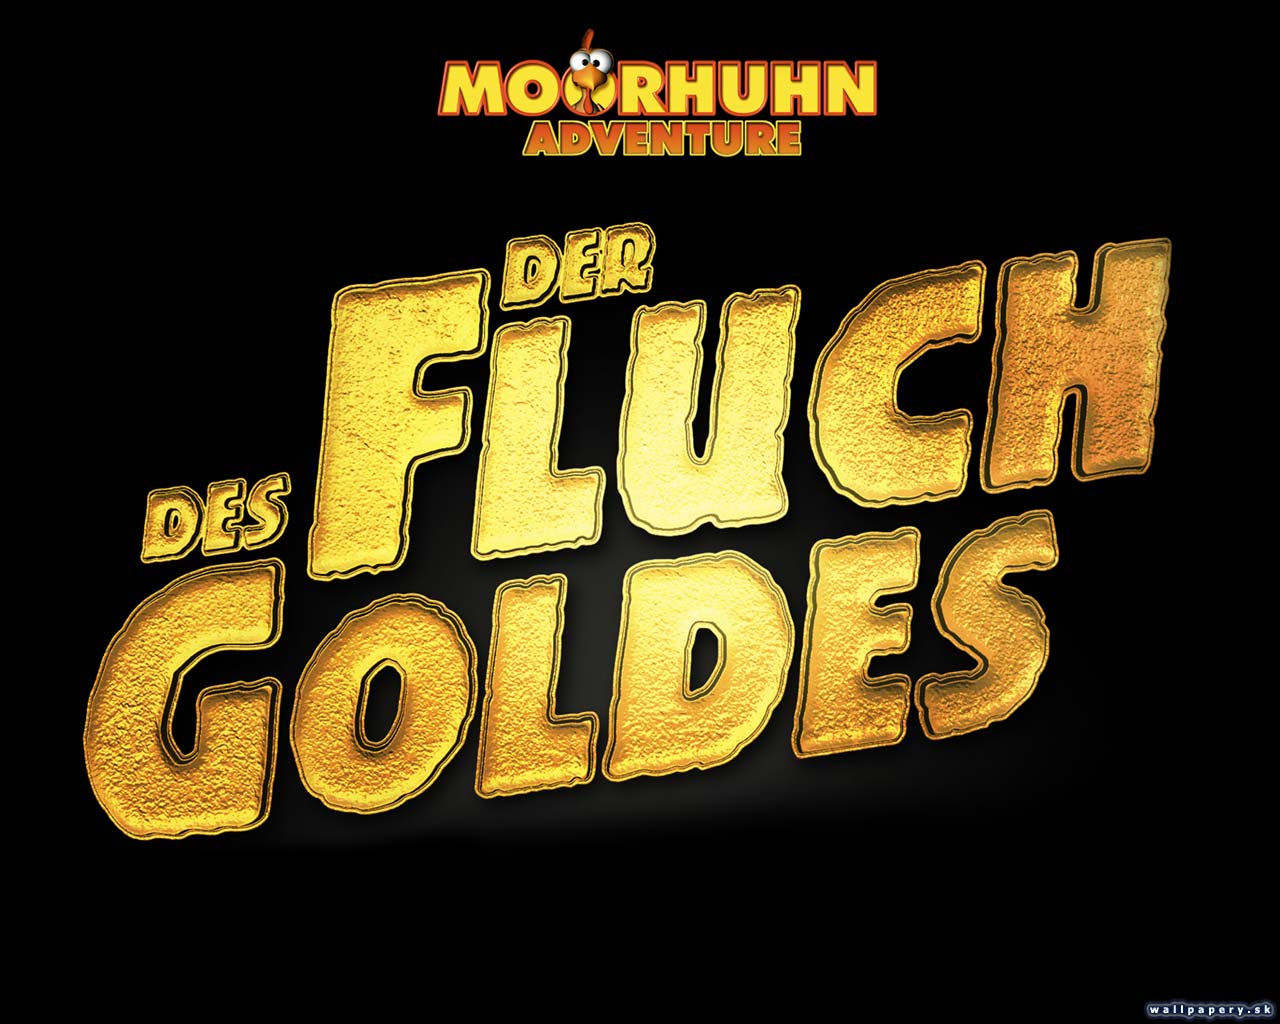 Moorhuhn Adventure 2 - Der Fuch des Goldes - wallpaper 2